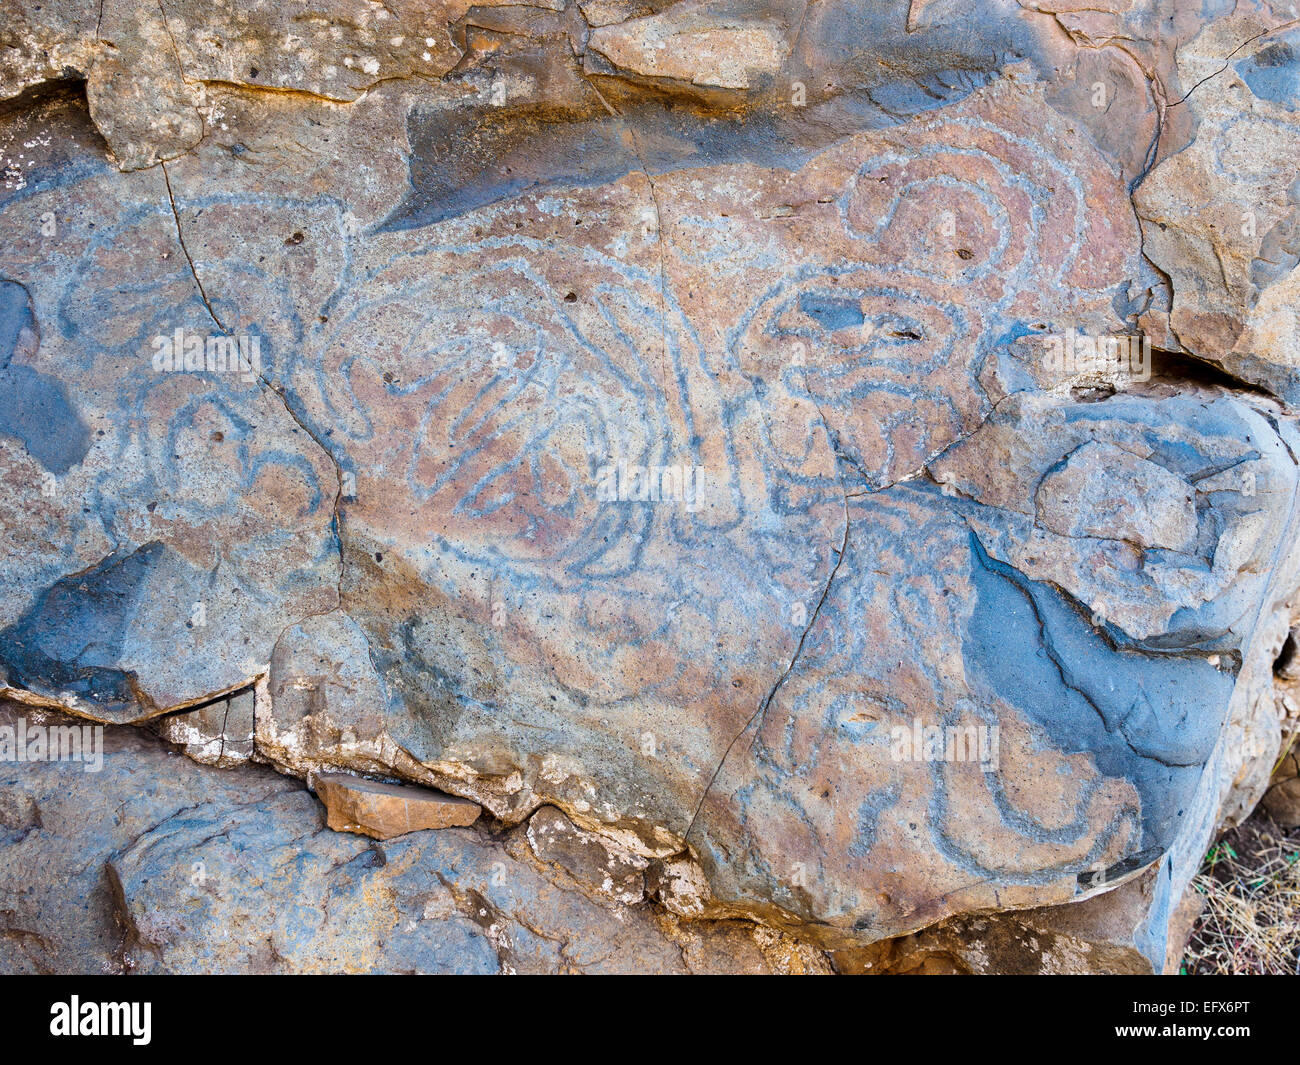 Prehistoric La Fajana rock carvings at El Paso on the Canary Island of La Palma Stock Photo